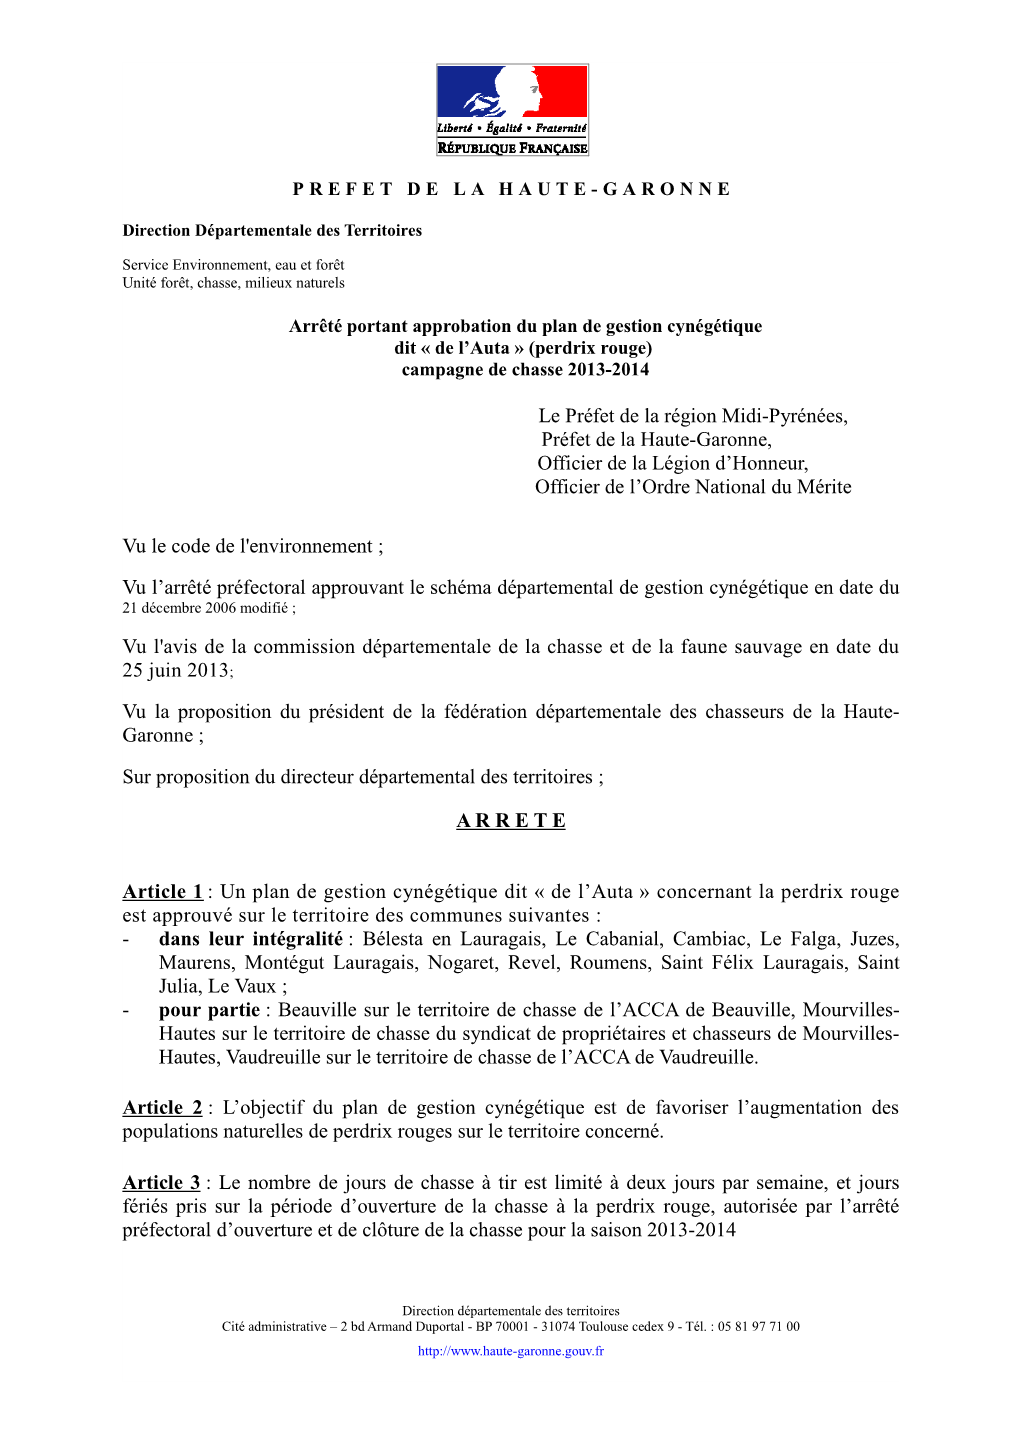 Le Préfet De La Région Midi-Pyrénées, Préfet De La Haute-Garonne, Officier De La Légion D’Honneur, Officier De L’Ordre National Du Mérite